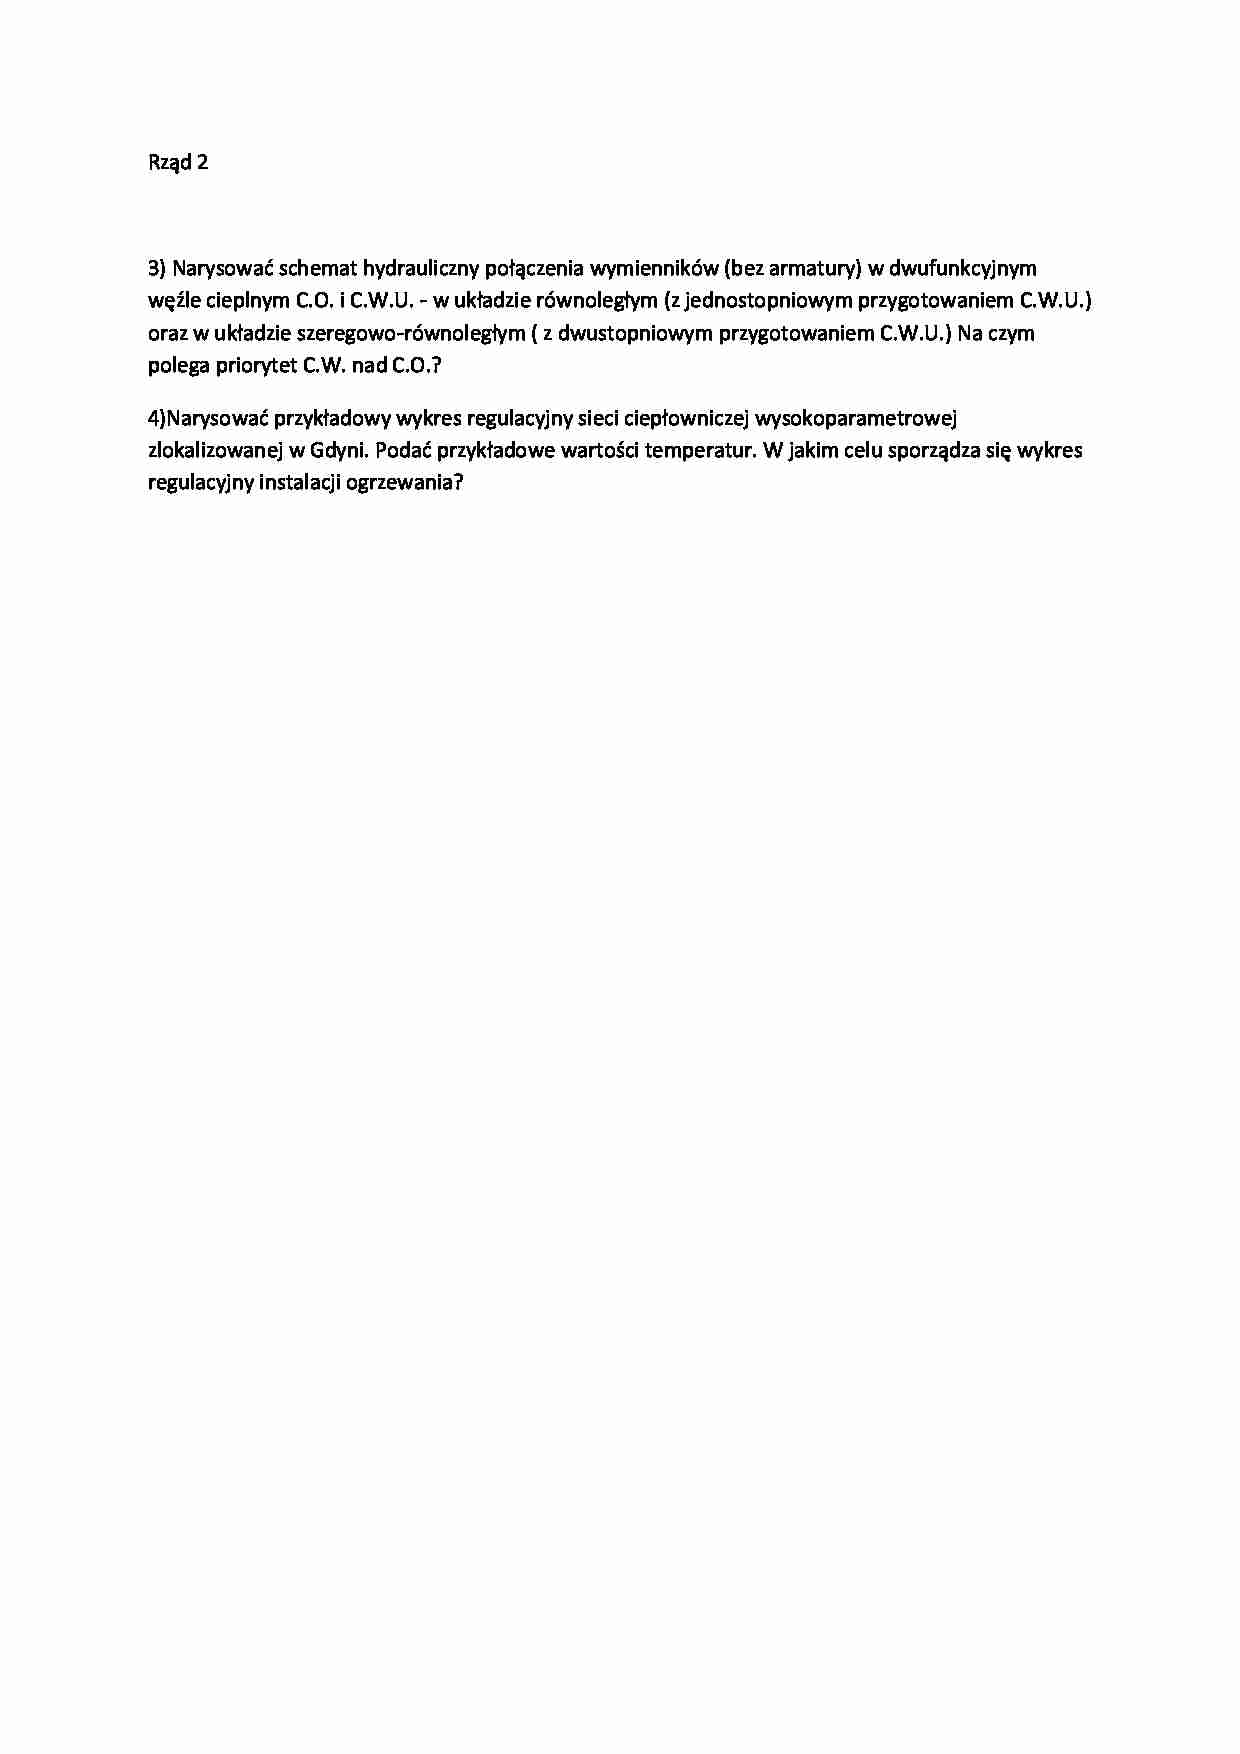 Ogrzewnictwo wentylacja i klimatyzacja-pytania grupa b - strona 1